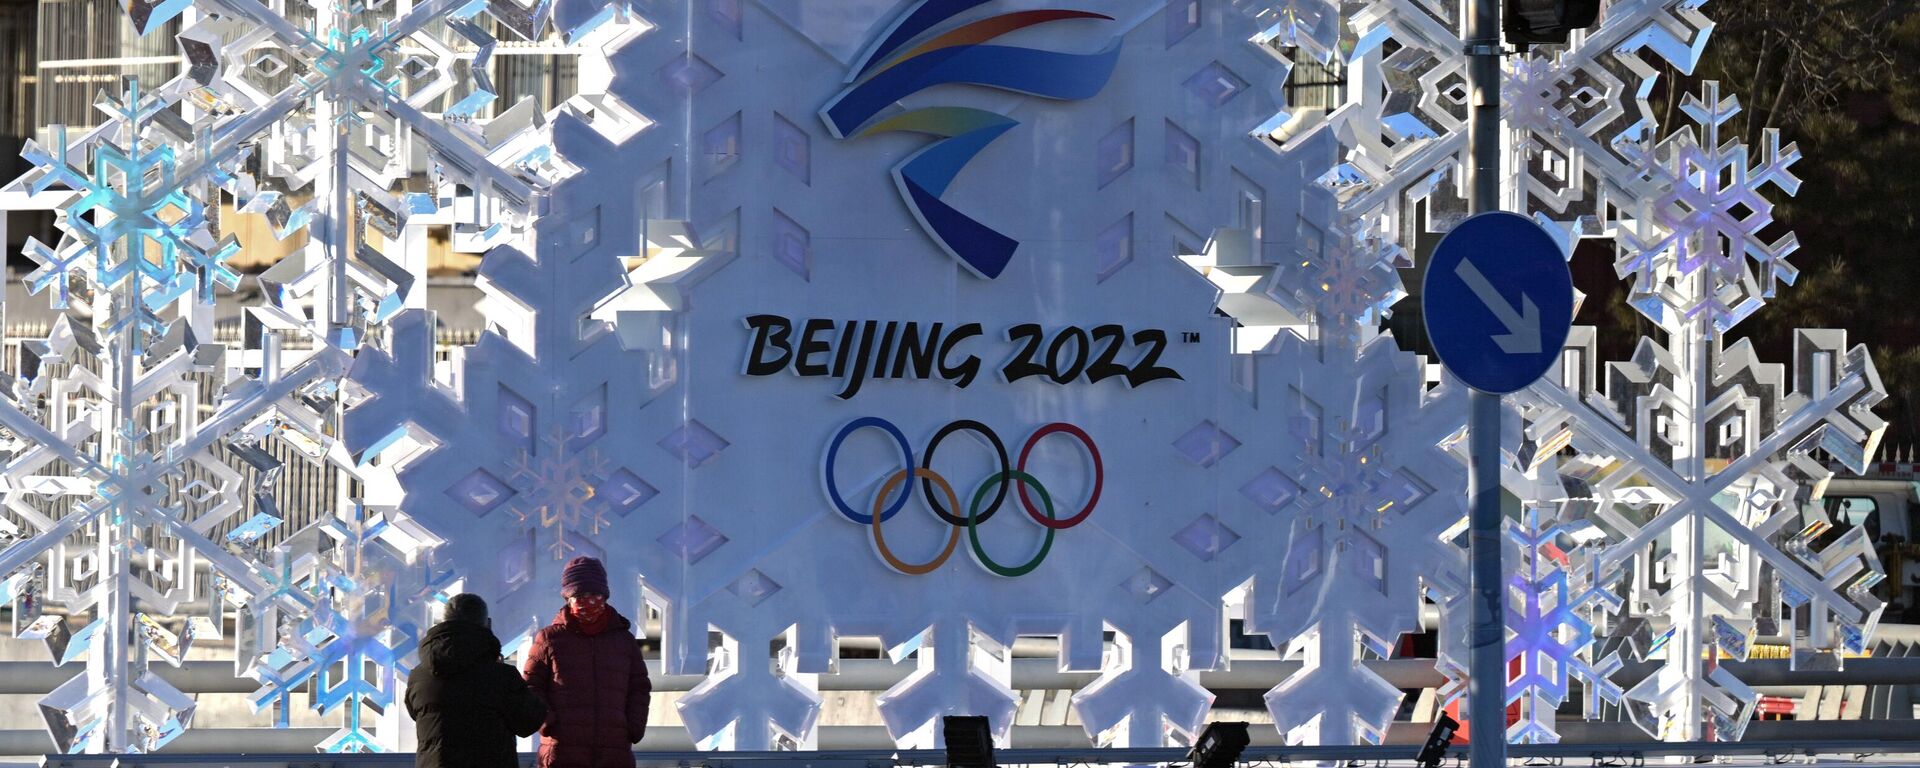 Будет много скандалов: прогноз астролога на Олимпийские игры 2022 в Пекине - Sputnik Беларусь, 1920, 03.02.2022